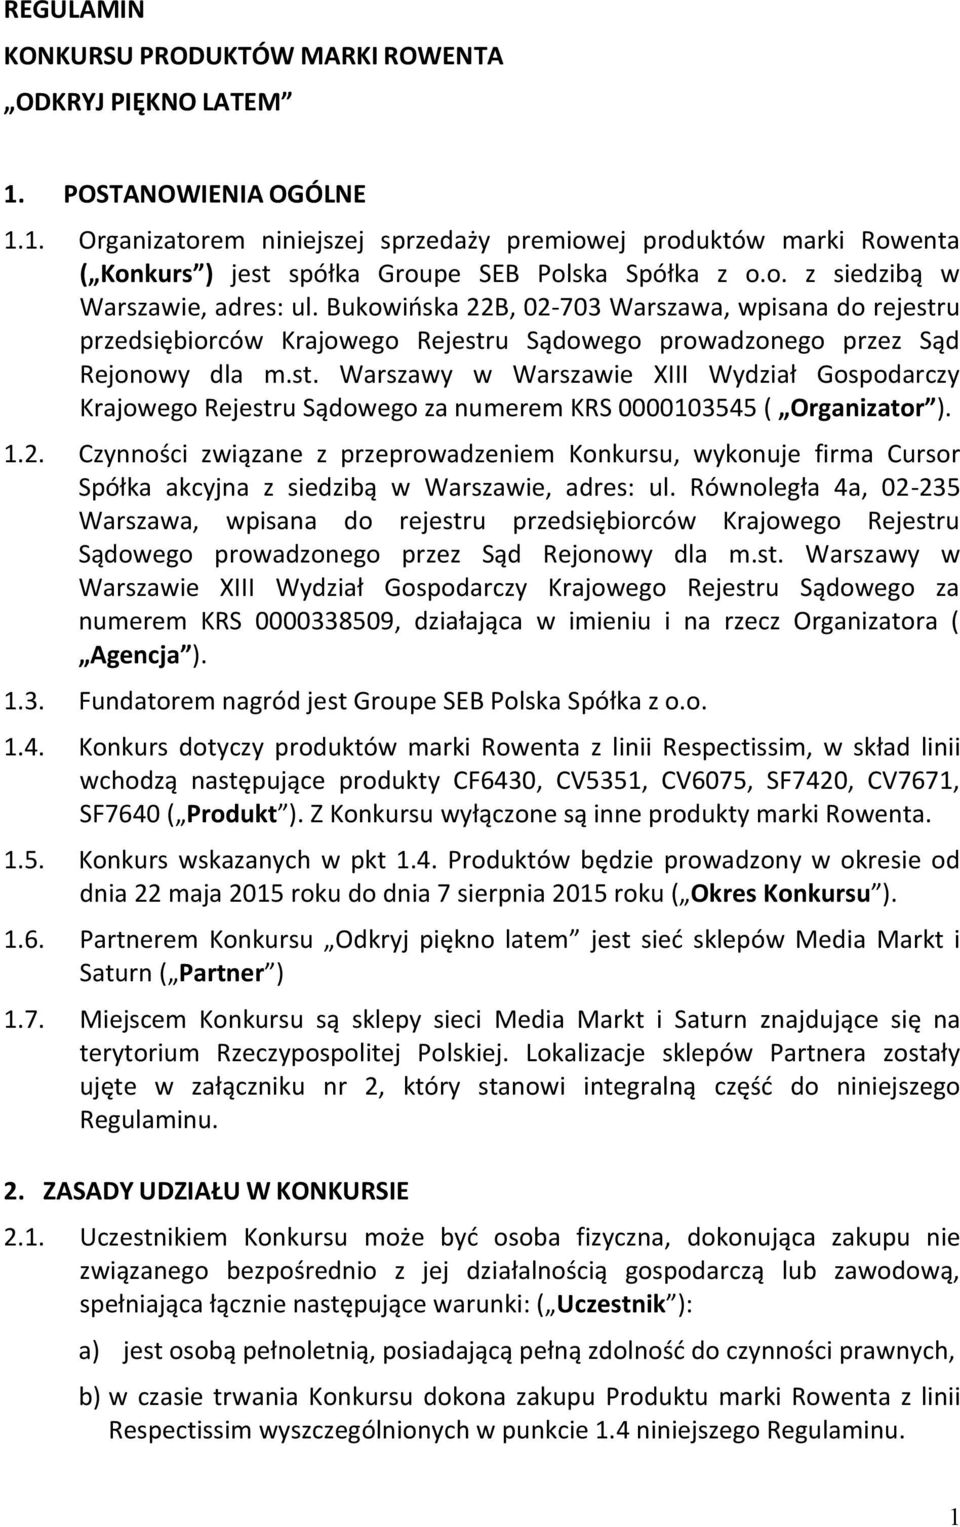 u przedsiębiorców Krajowego Rejestru Sądowego prowadzonego przez Sąd Rejonowy dla m.st. Warszawy w Warszawie XIII Wydział Gospodarczy Krajowego Rejestru Sądowego za numerem KRS 0000103545 ( Organizator ).